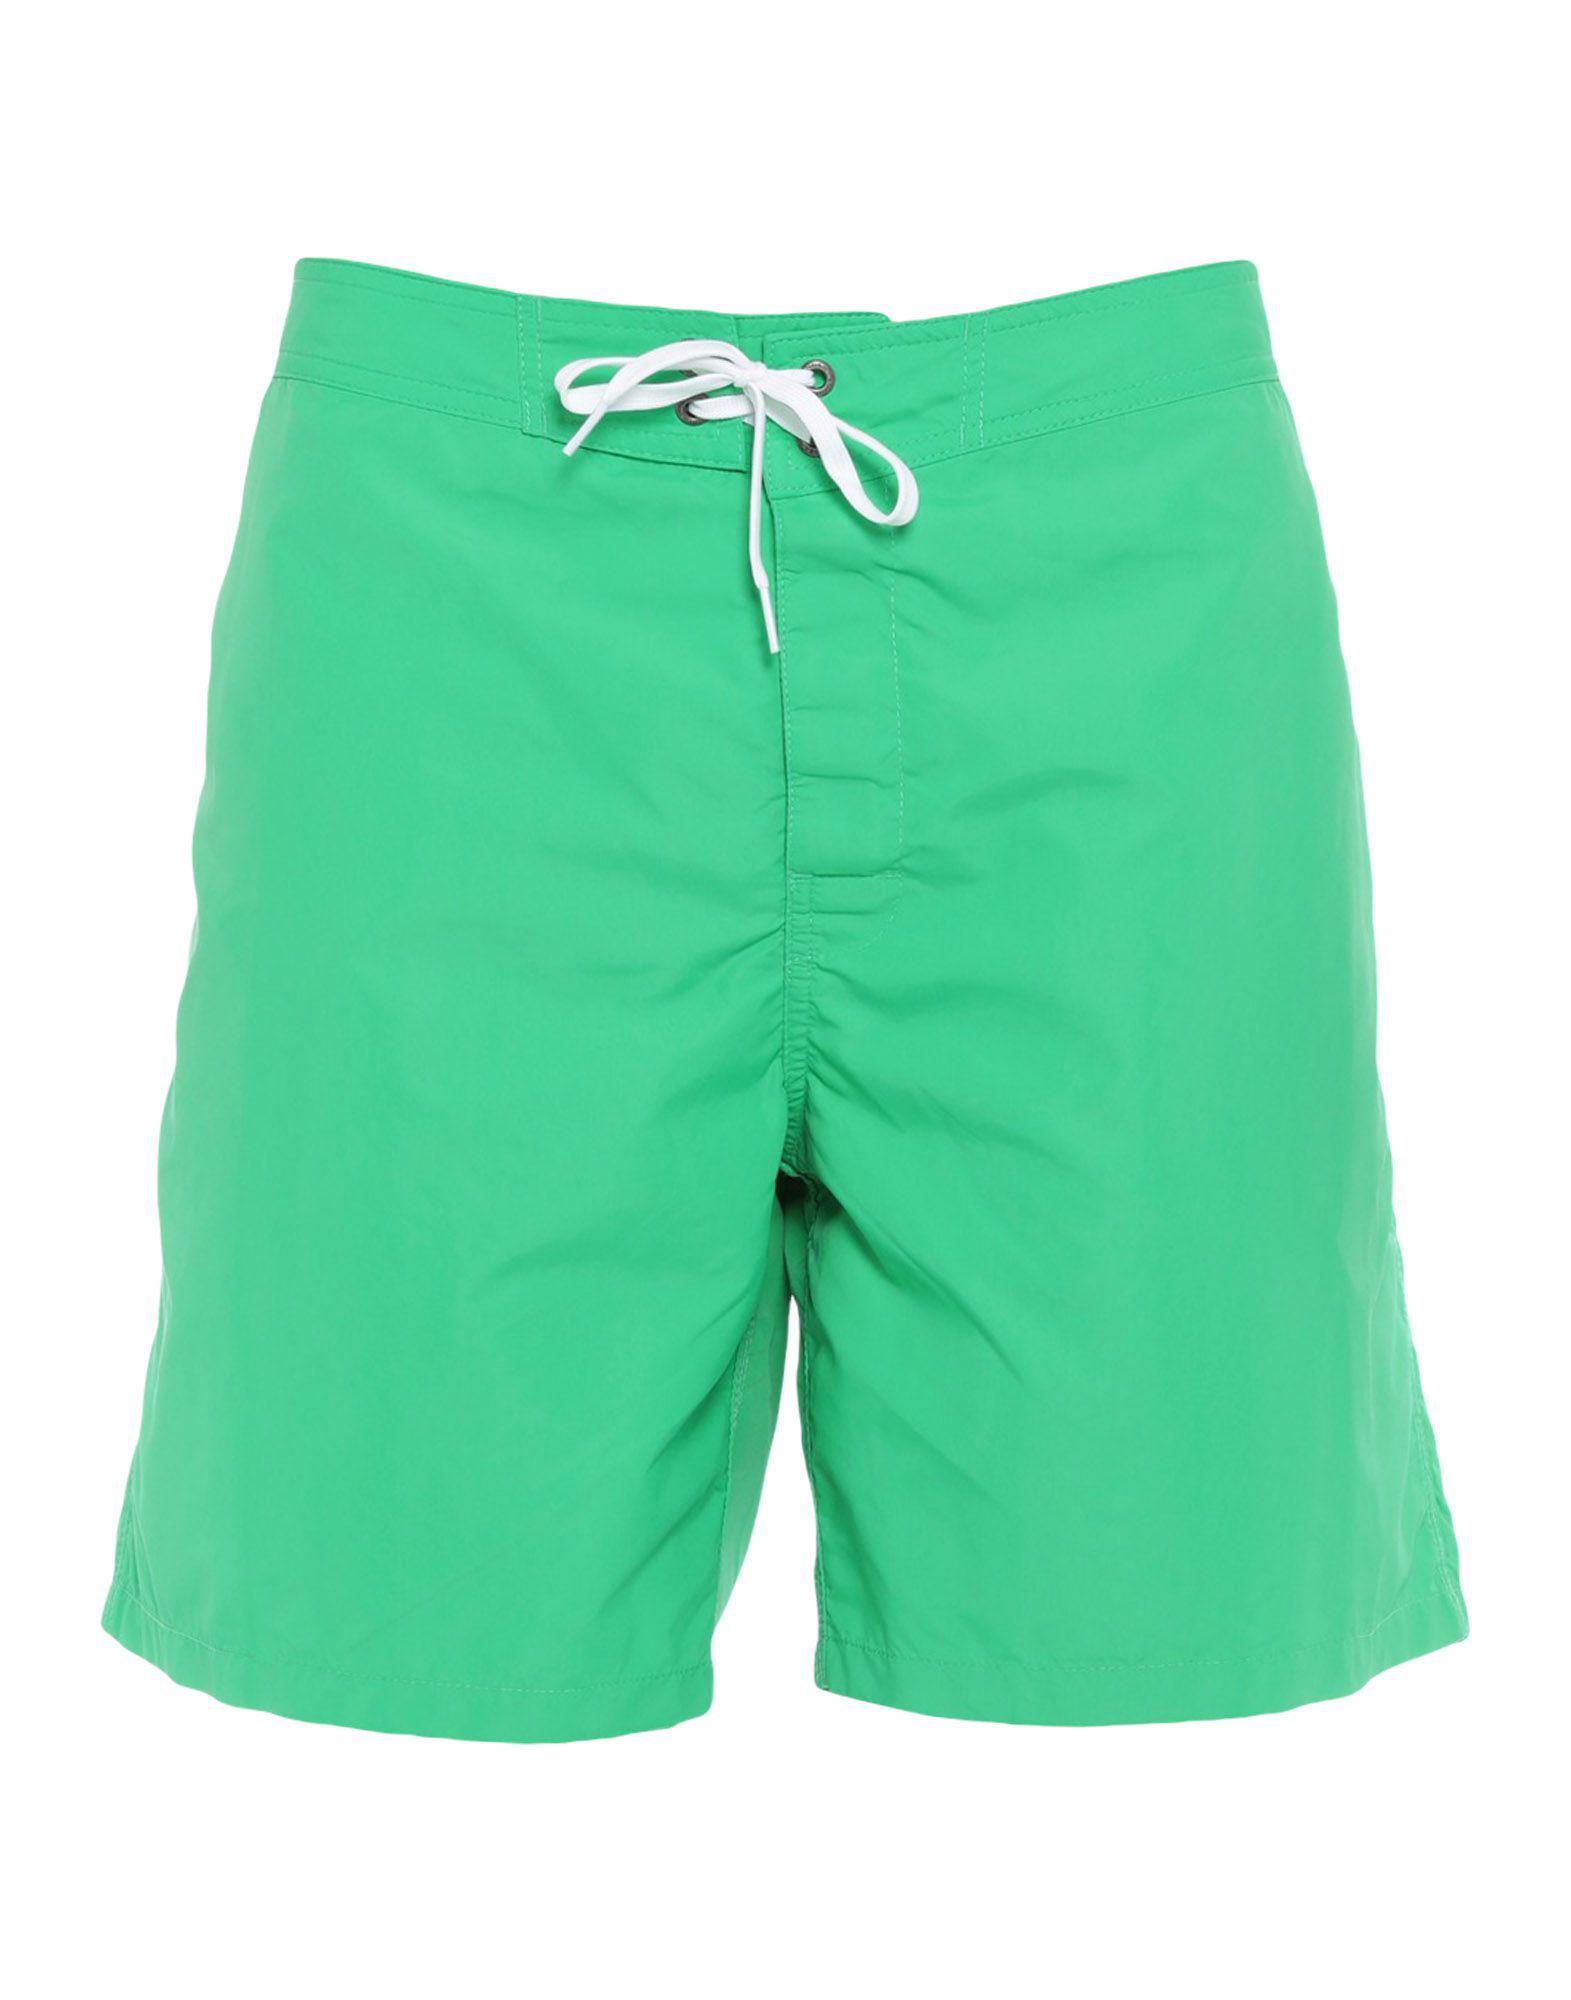 Sundek Synthetic Swim Trunks in Light Green (Green) for Men - Lyst